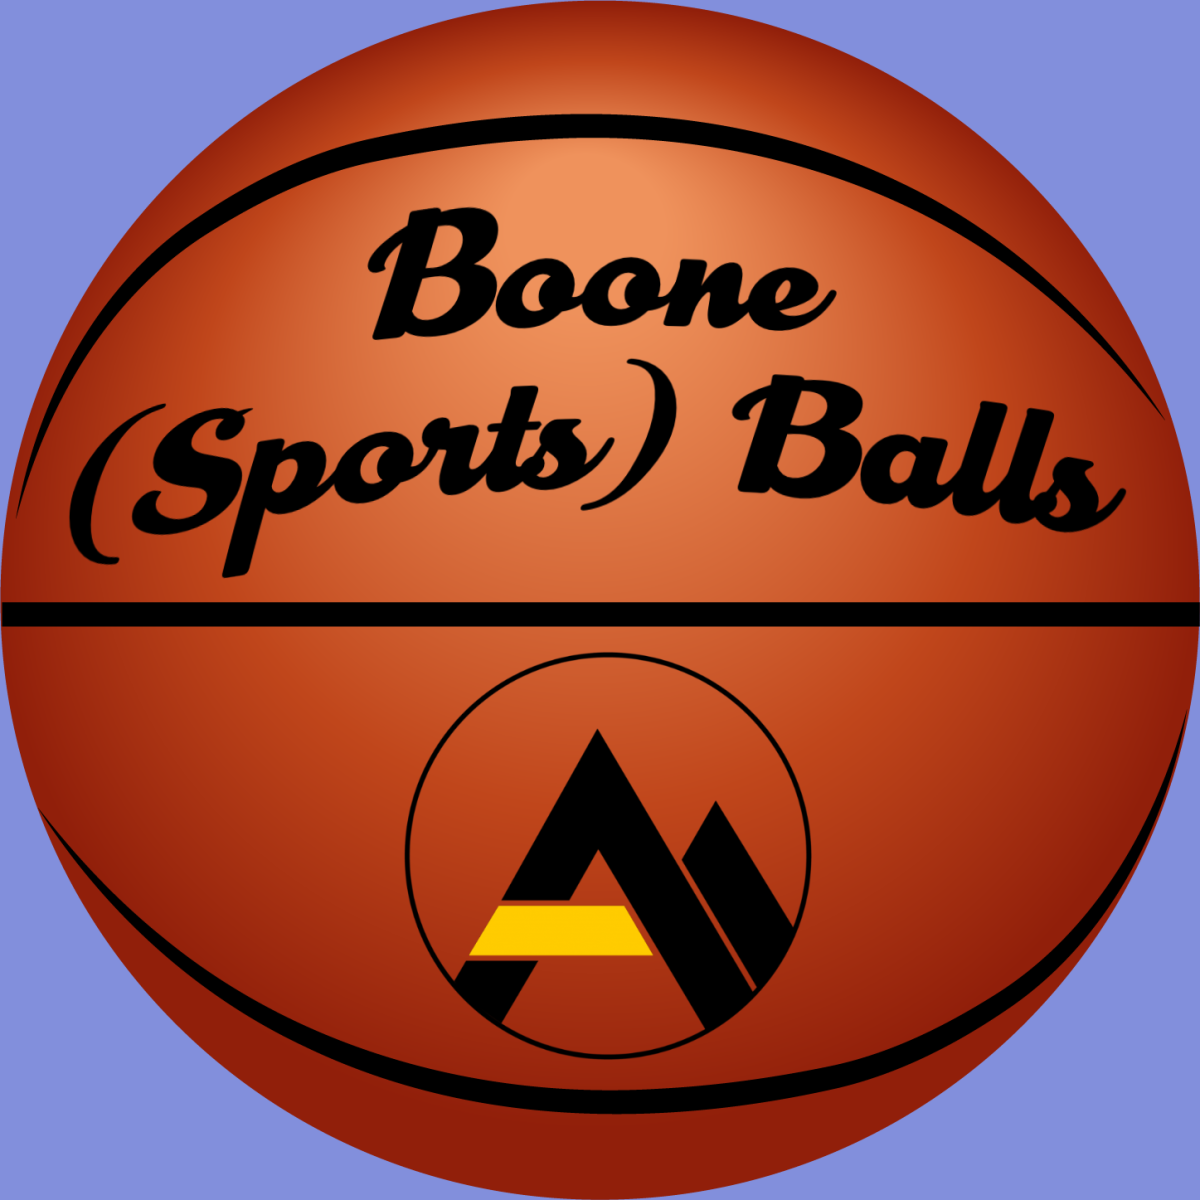 hughesrm2_boonesportsballs